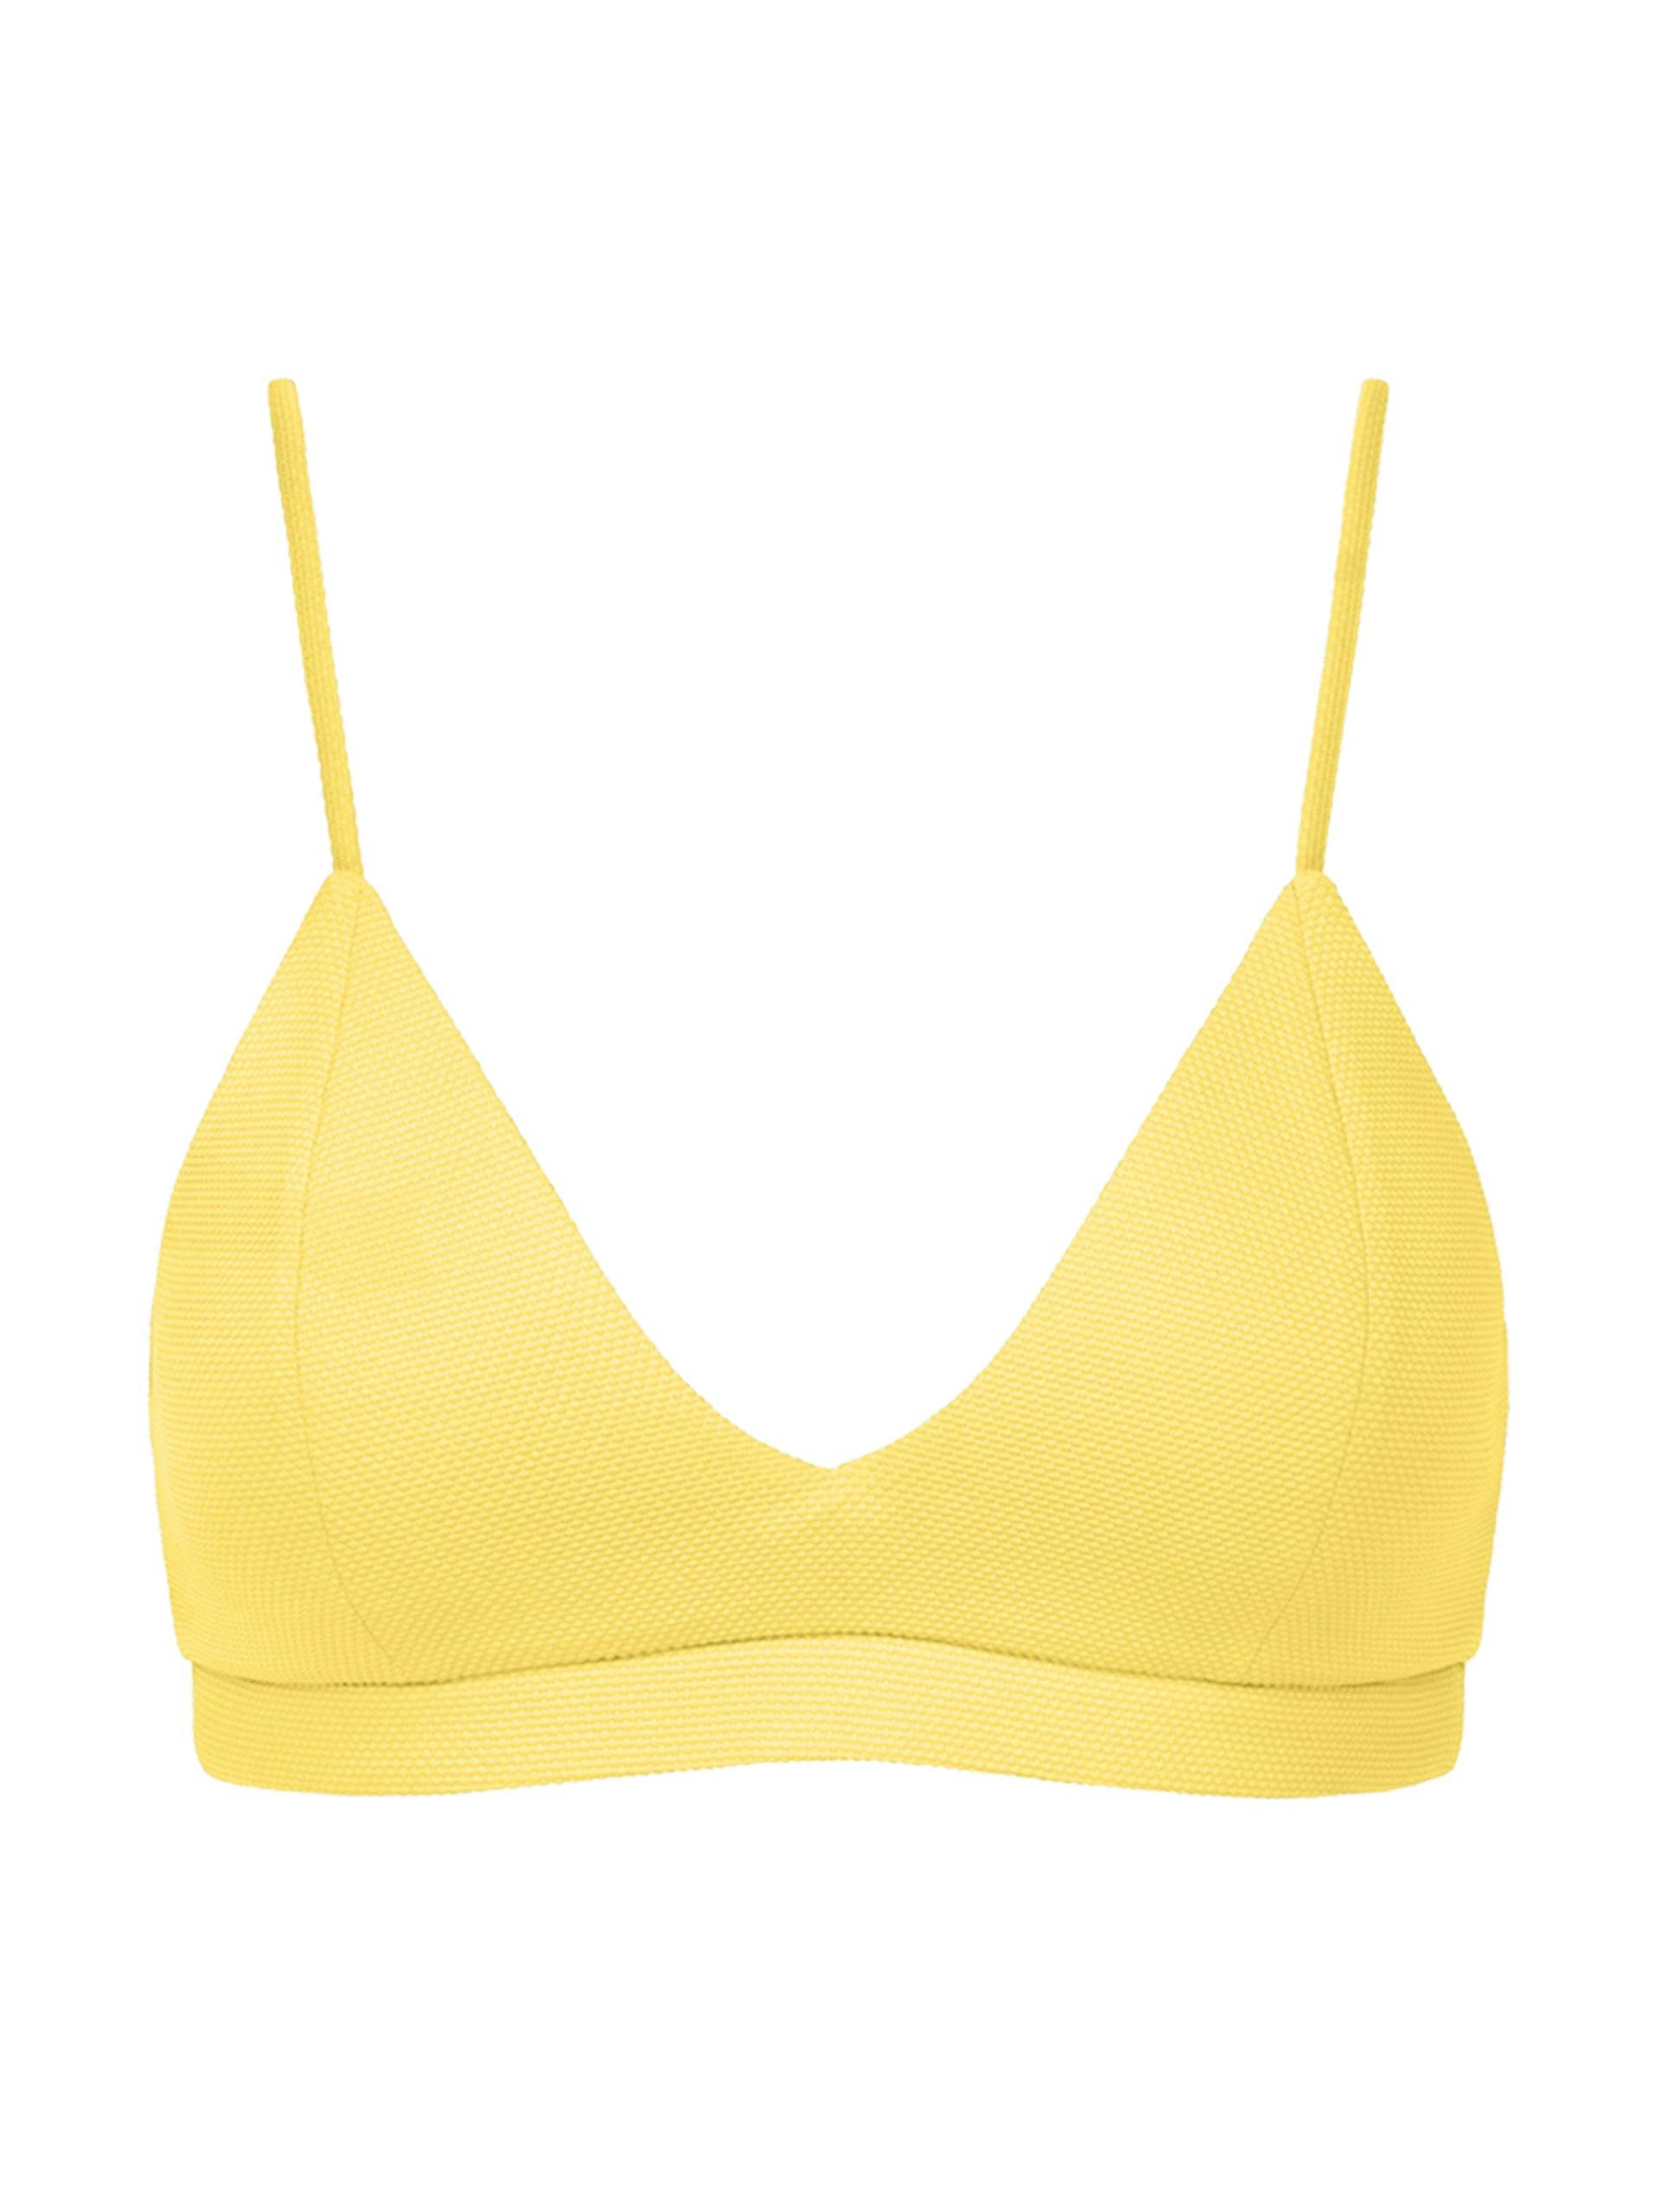 Citron yellow Grace triangle bikini top